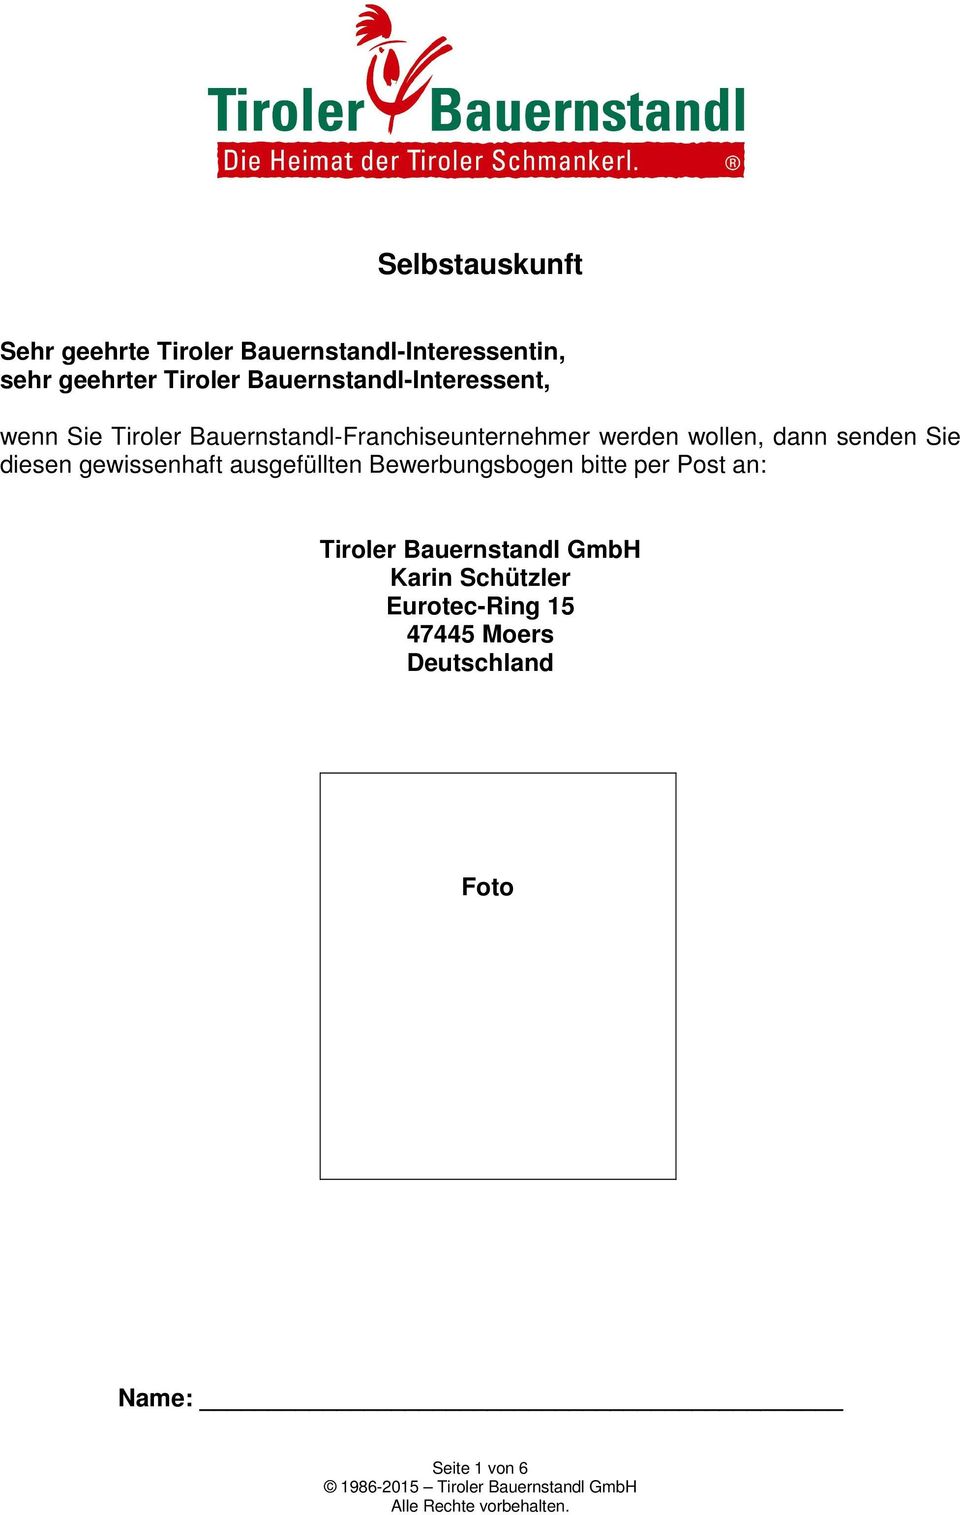 dann senden Sie diesen gewissenhaft ausgefüllten Bewerbungsbogen bitte per Post an: Tiroler